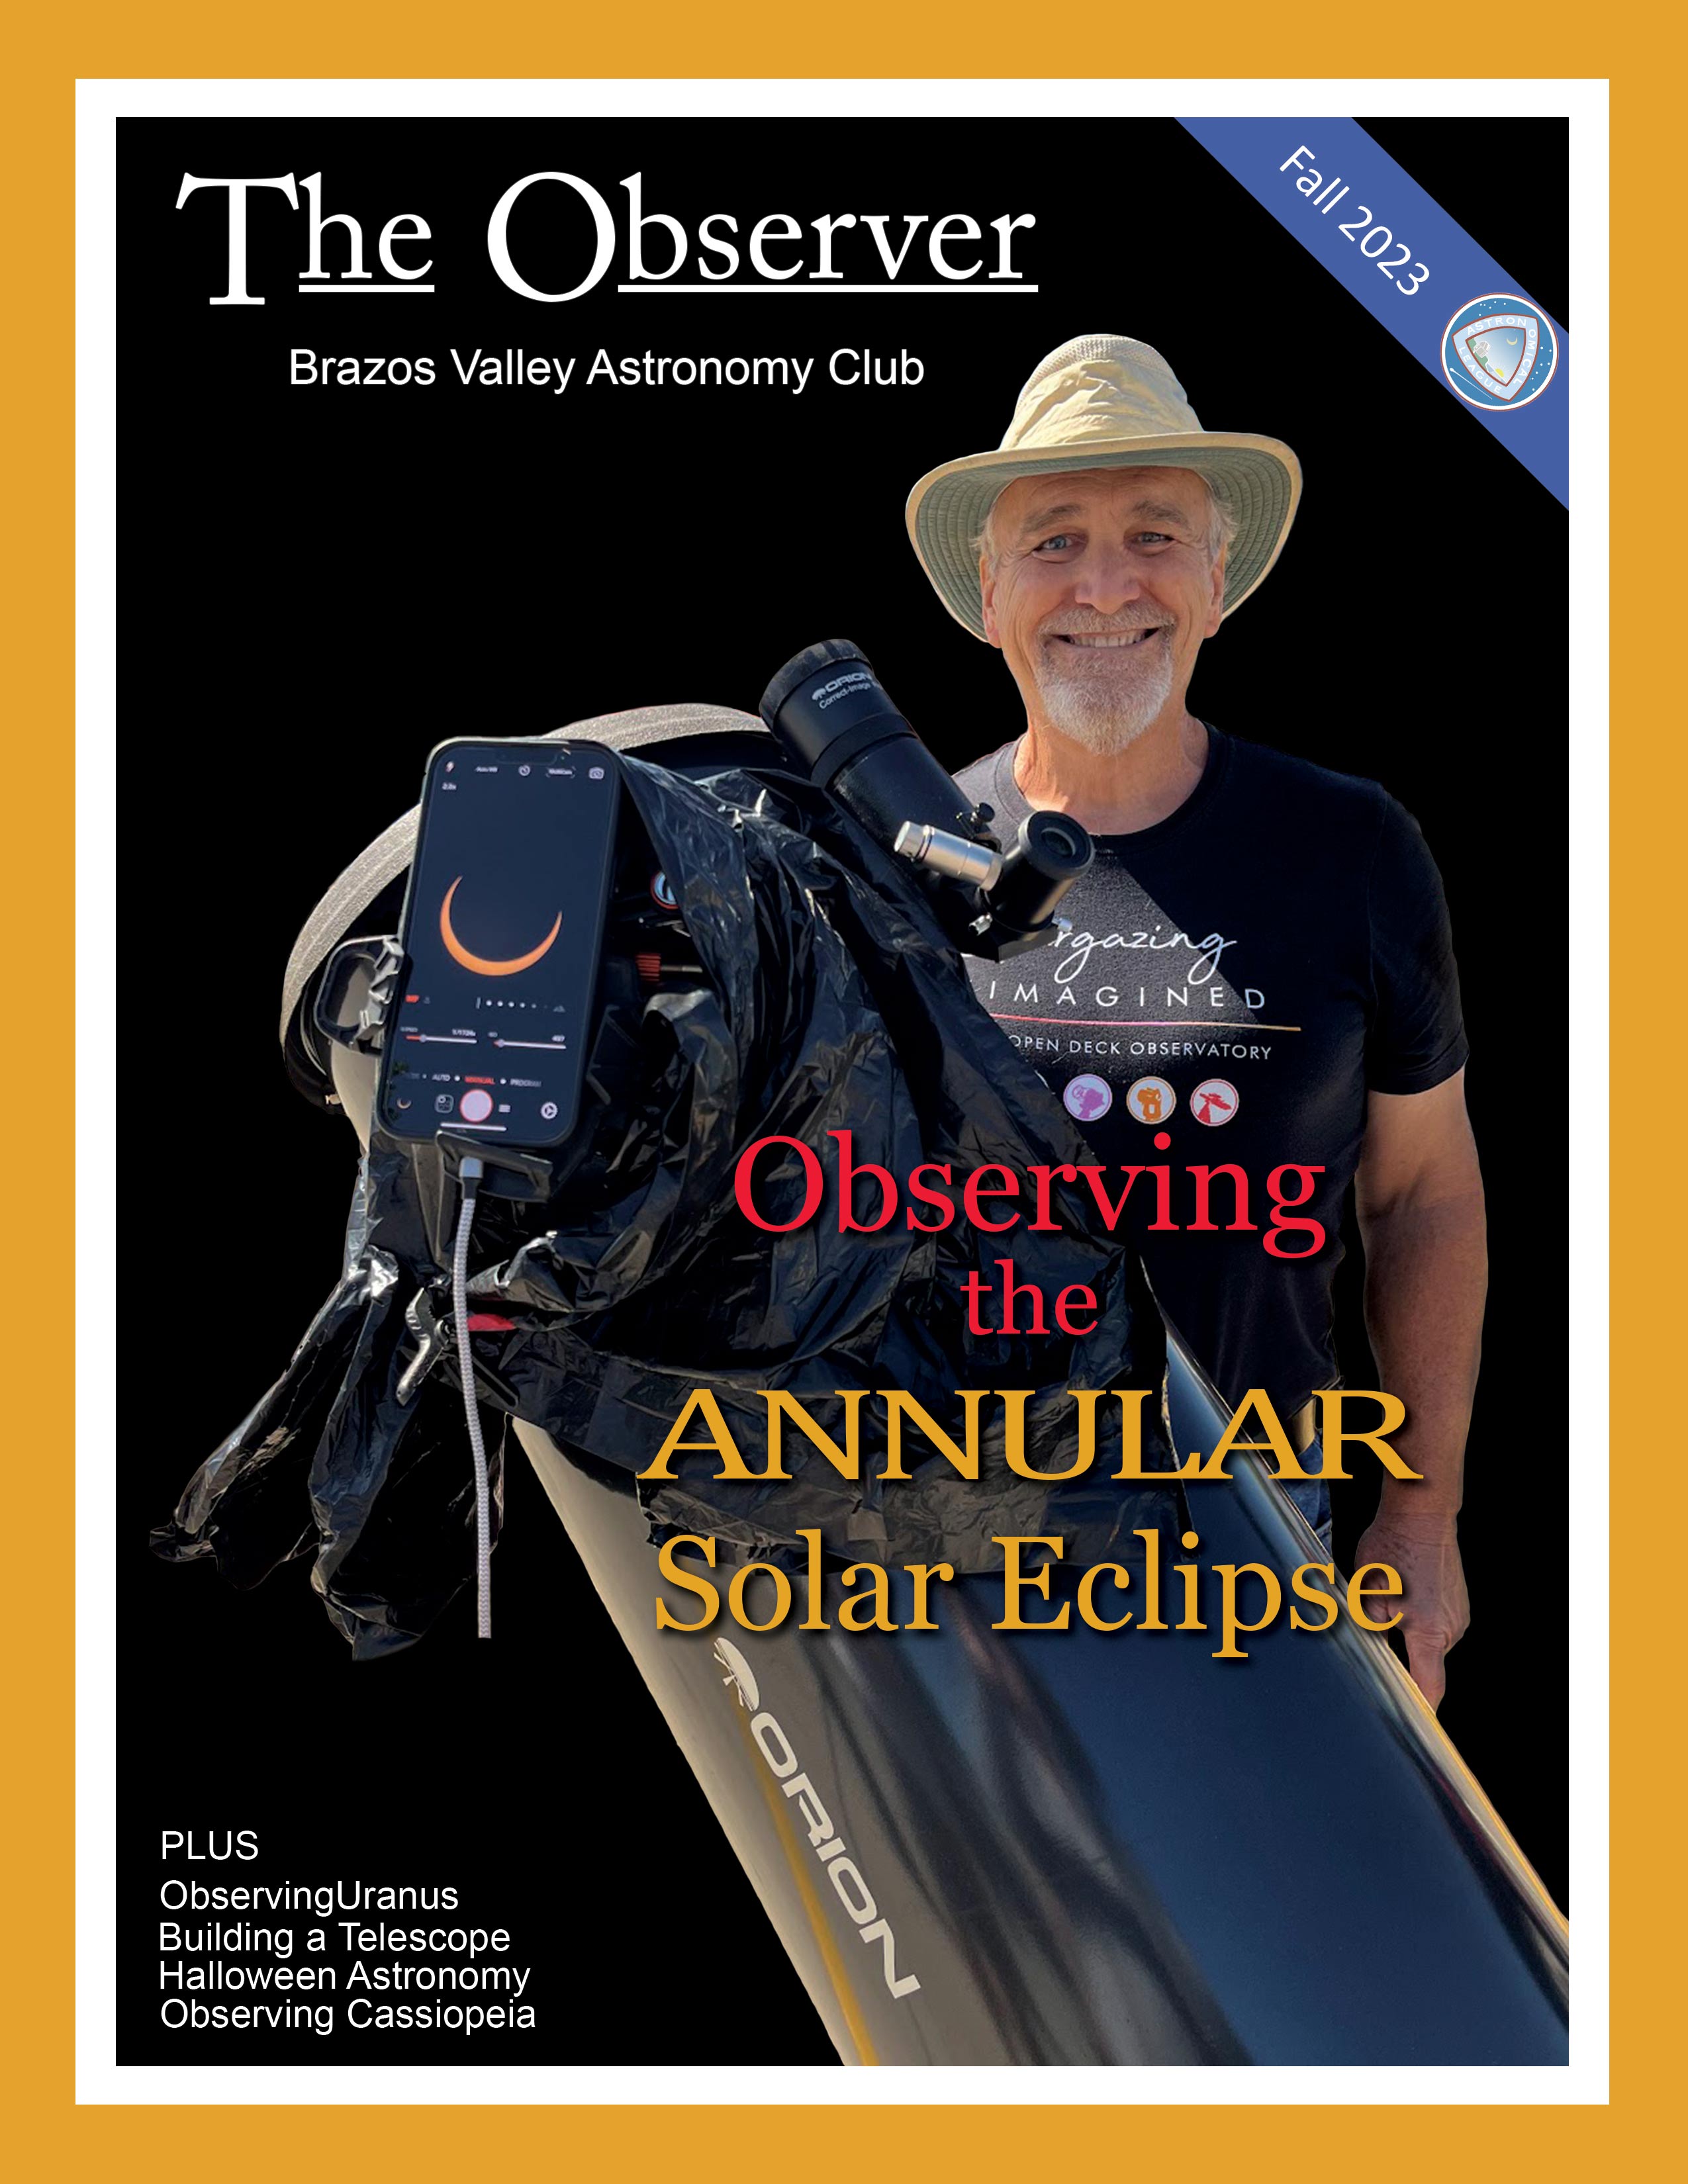 Warren Bracewell waiting for solar eclipse in Boerne TX